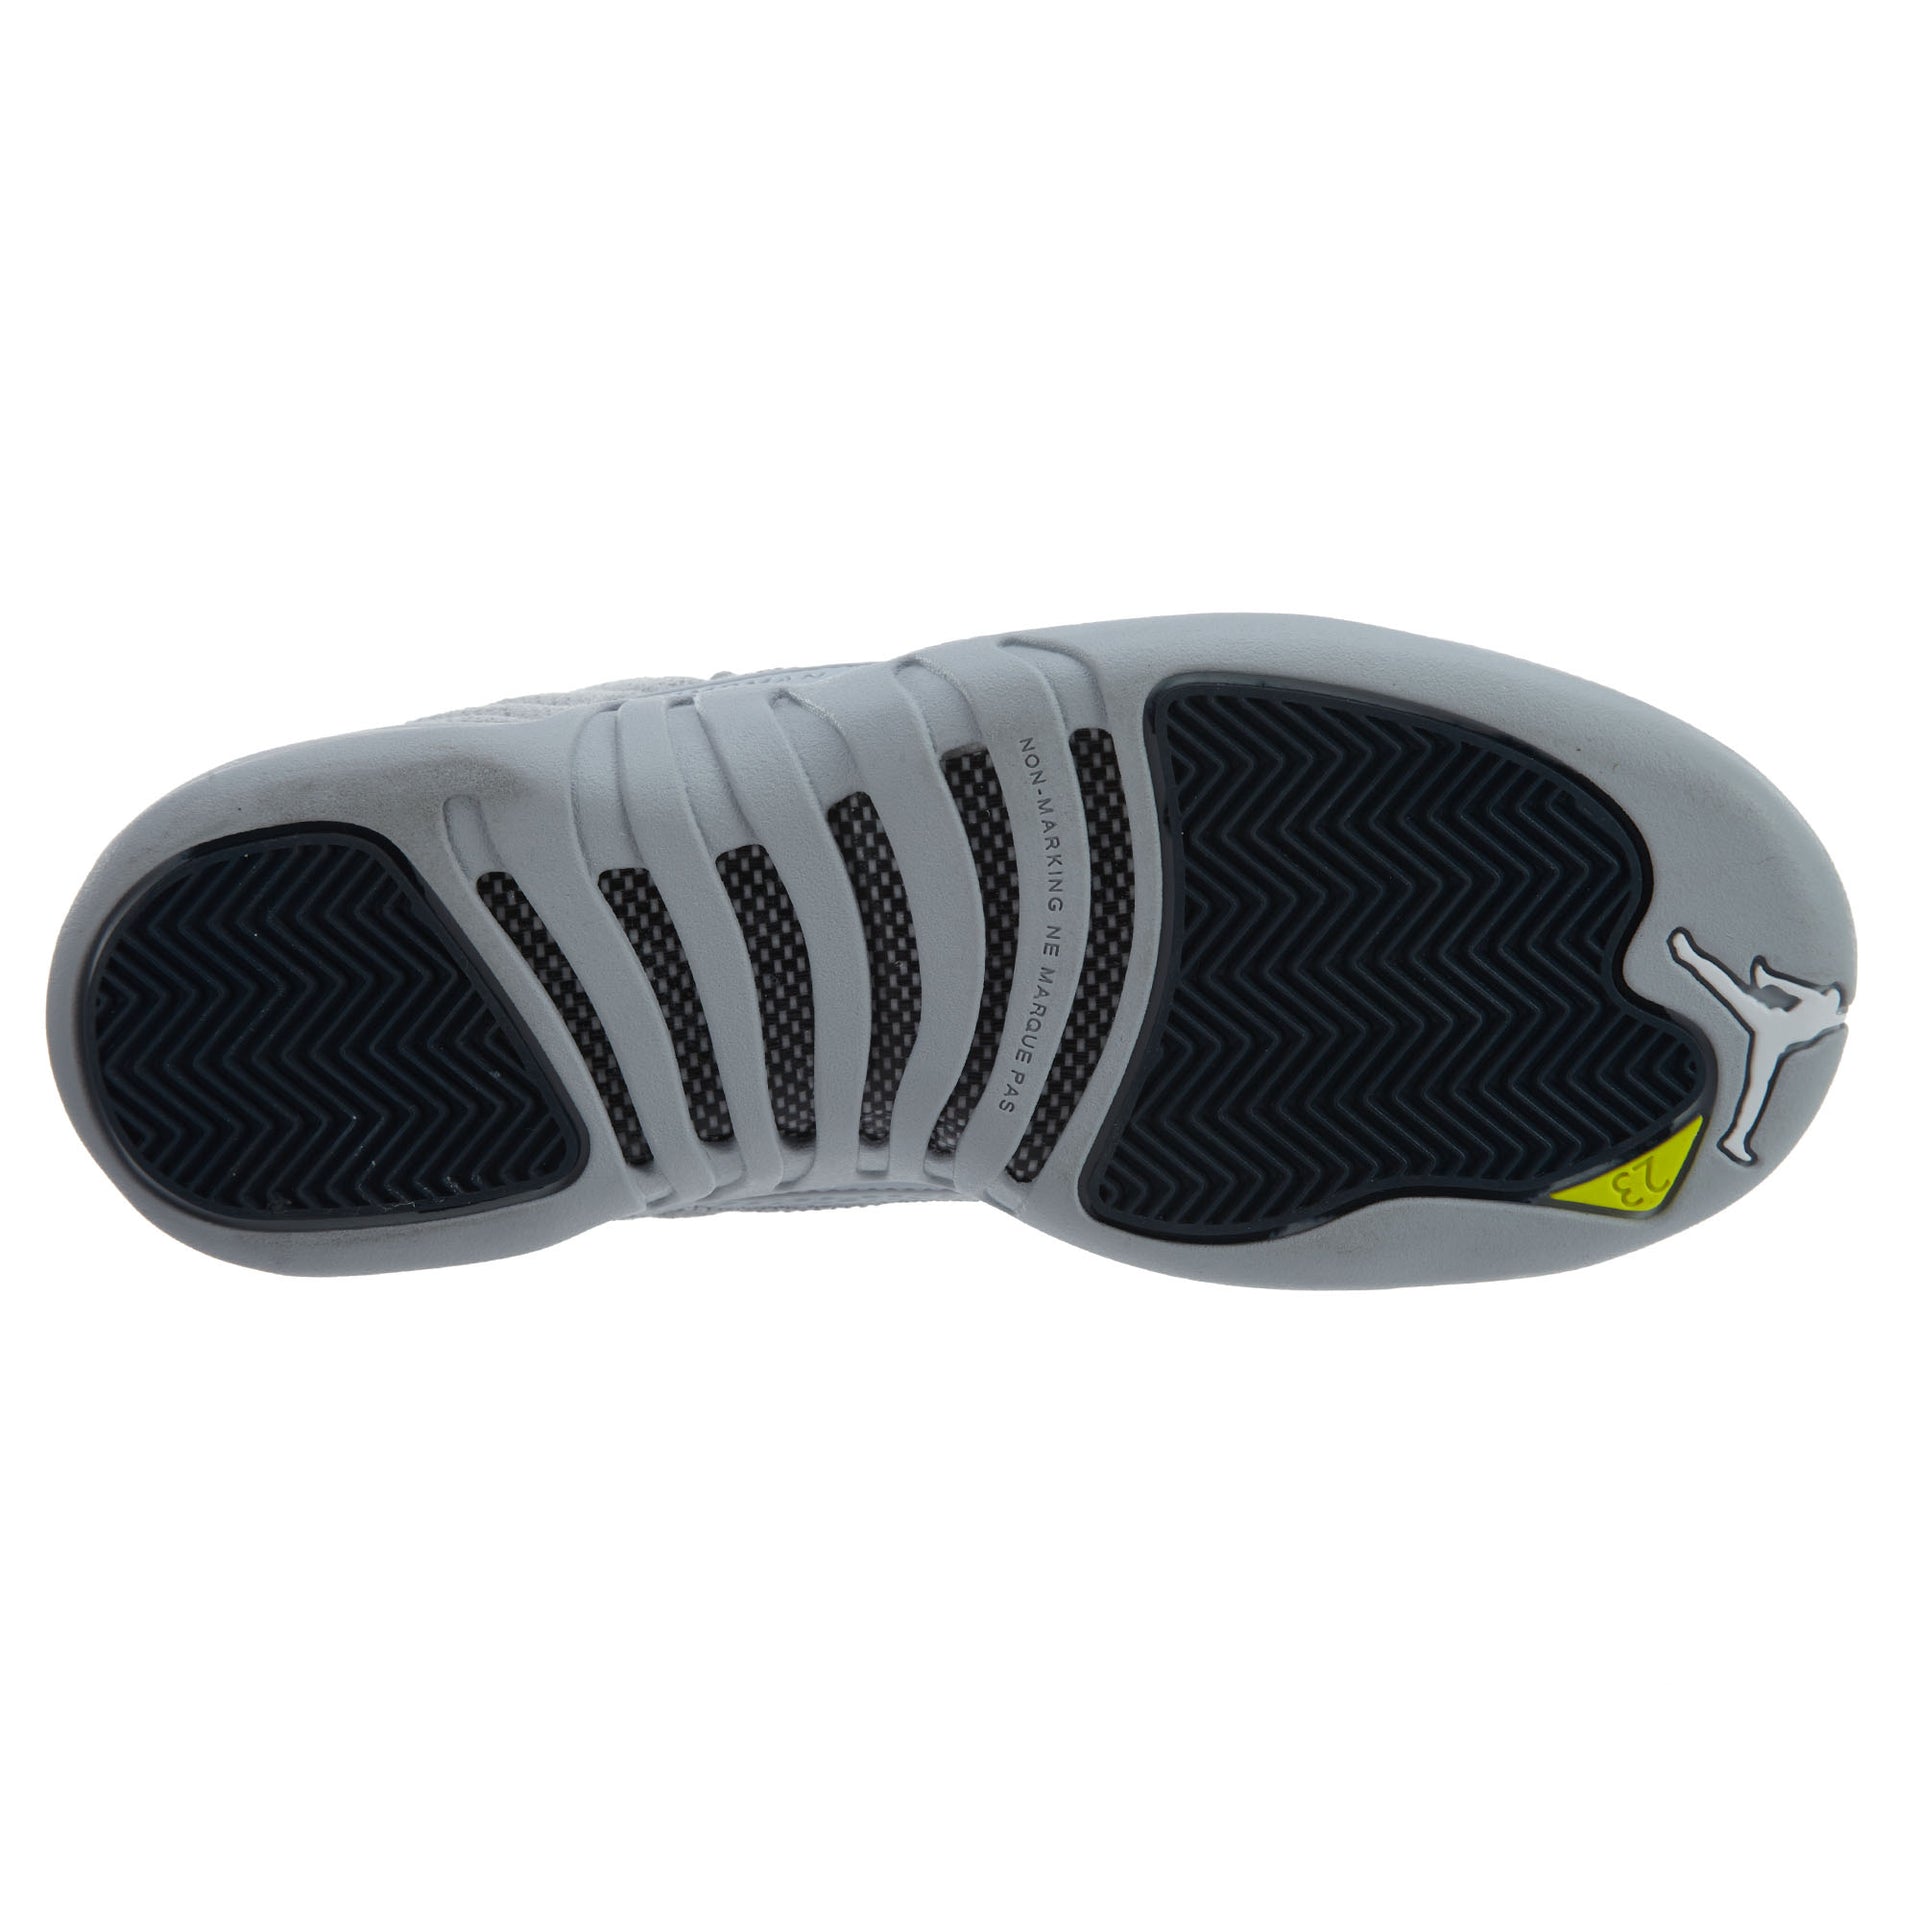 Air Jordan 12 Retro Low Sneakers Boys / Girls Style :308305